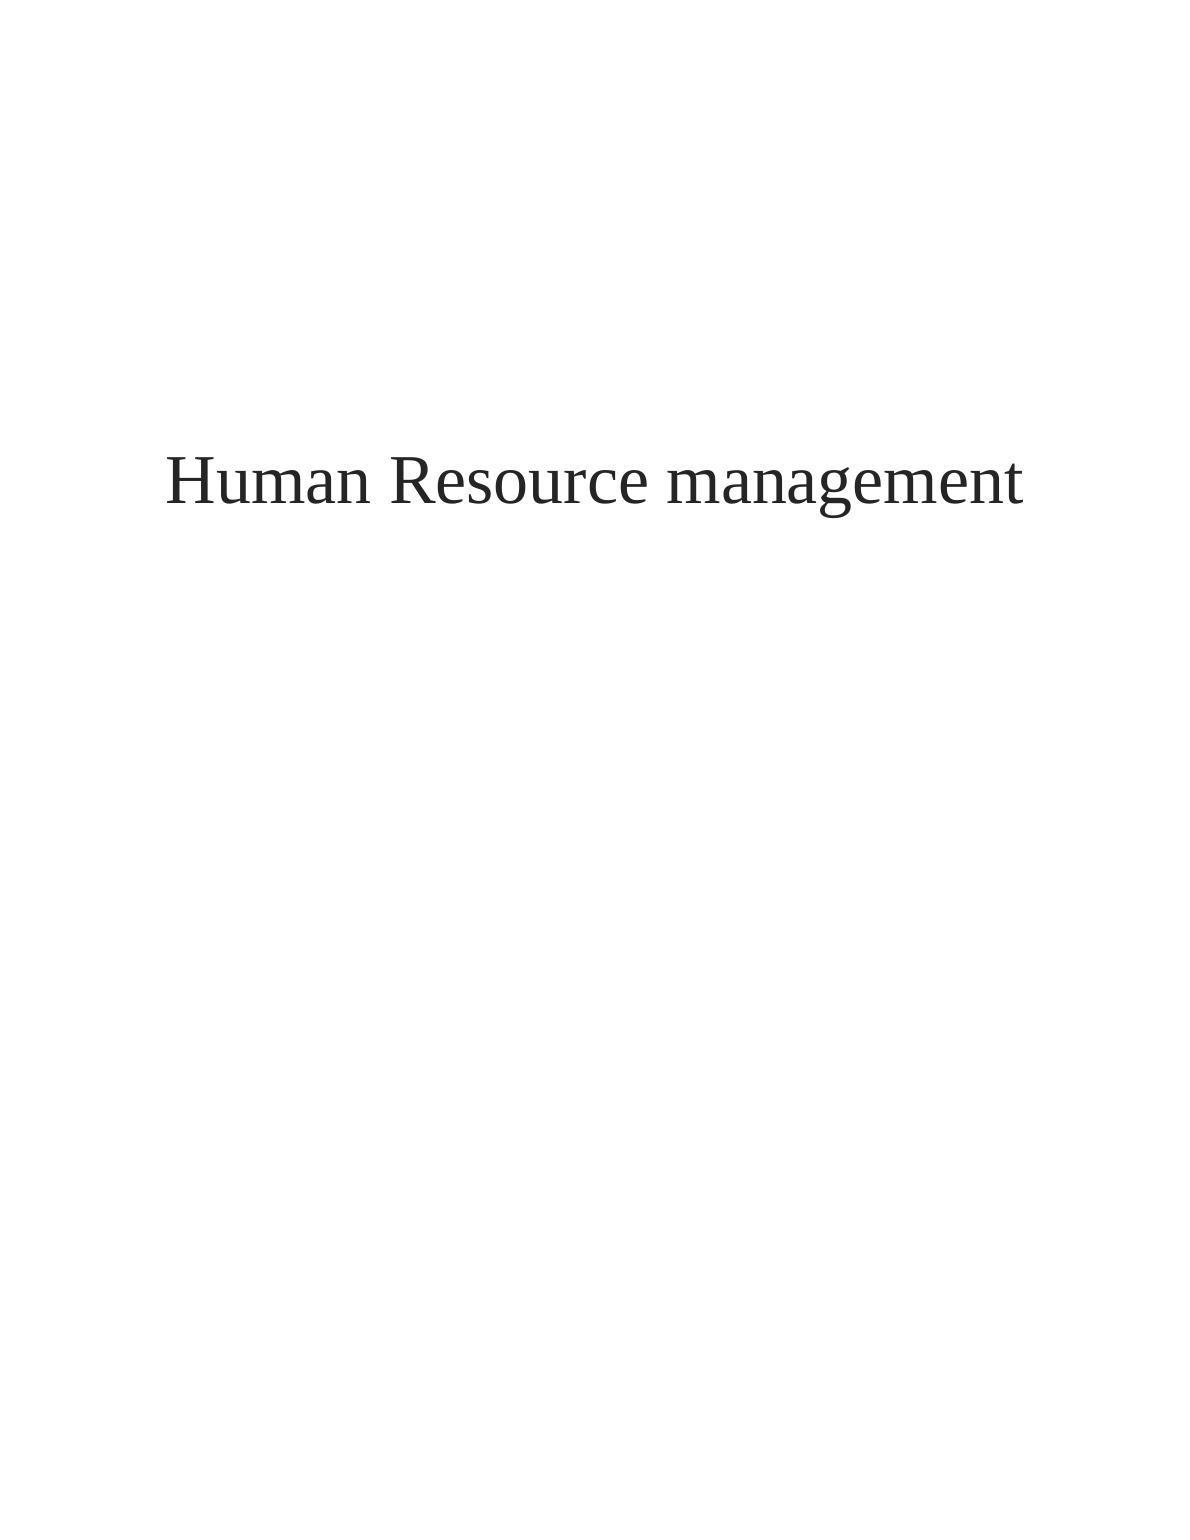 Human Resource Management Assignment : Tesco Plc_1